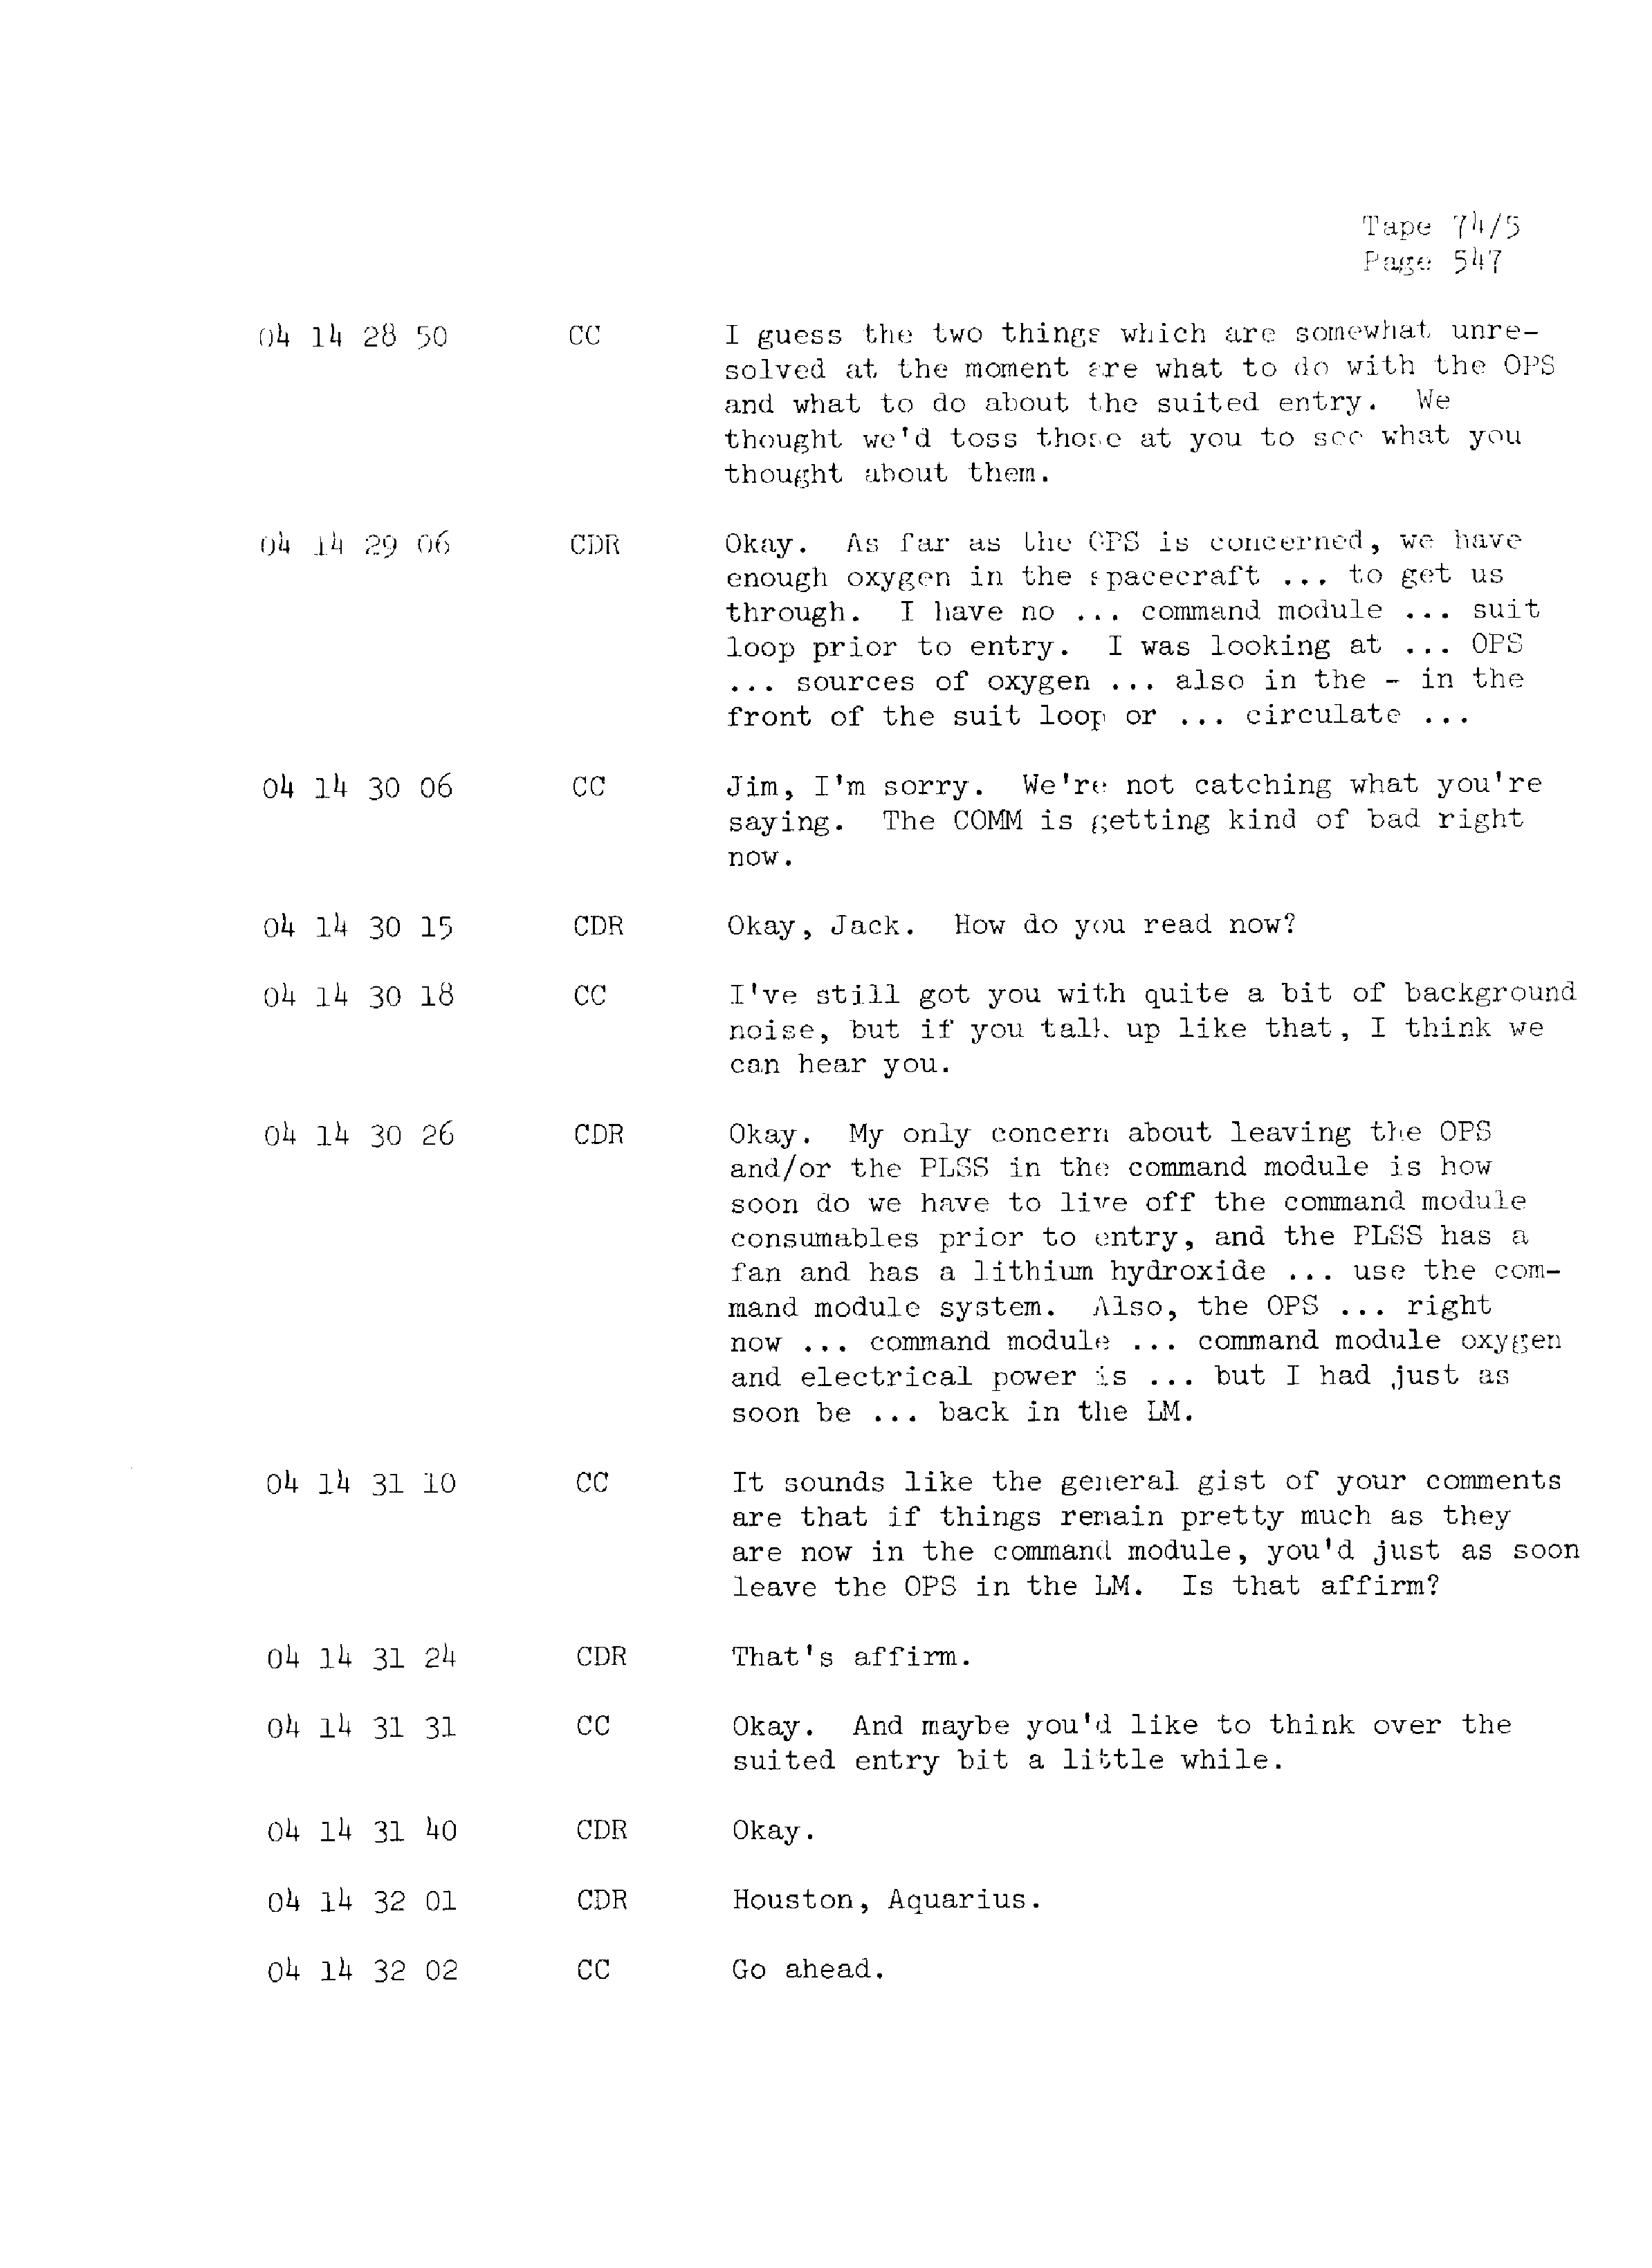 Page 554 of Apollo 13’s original transcript